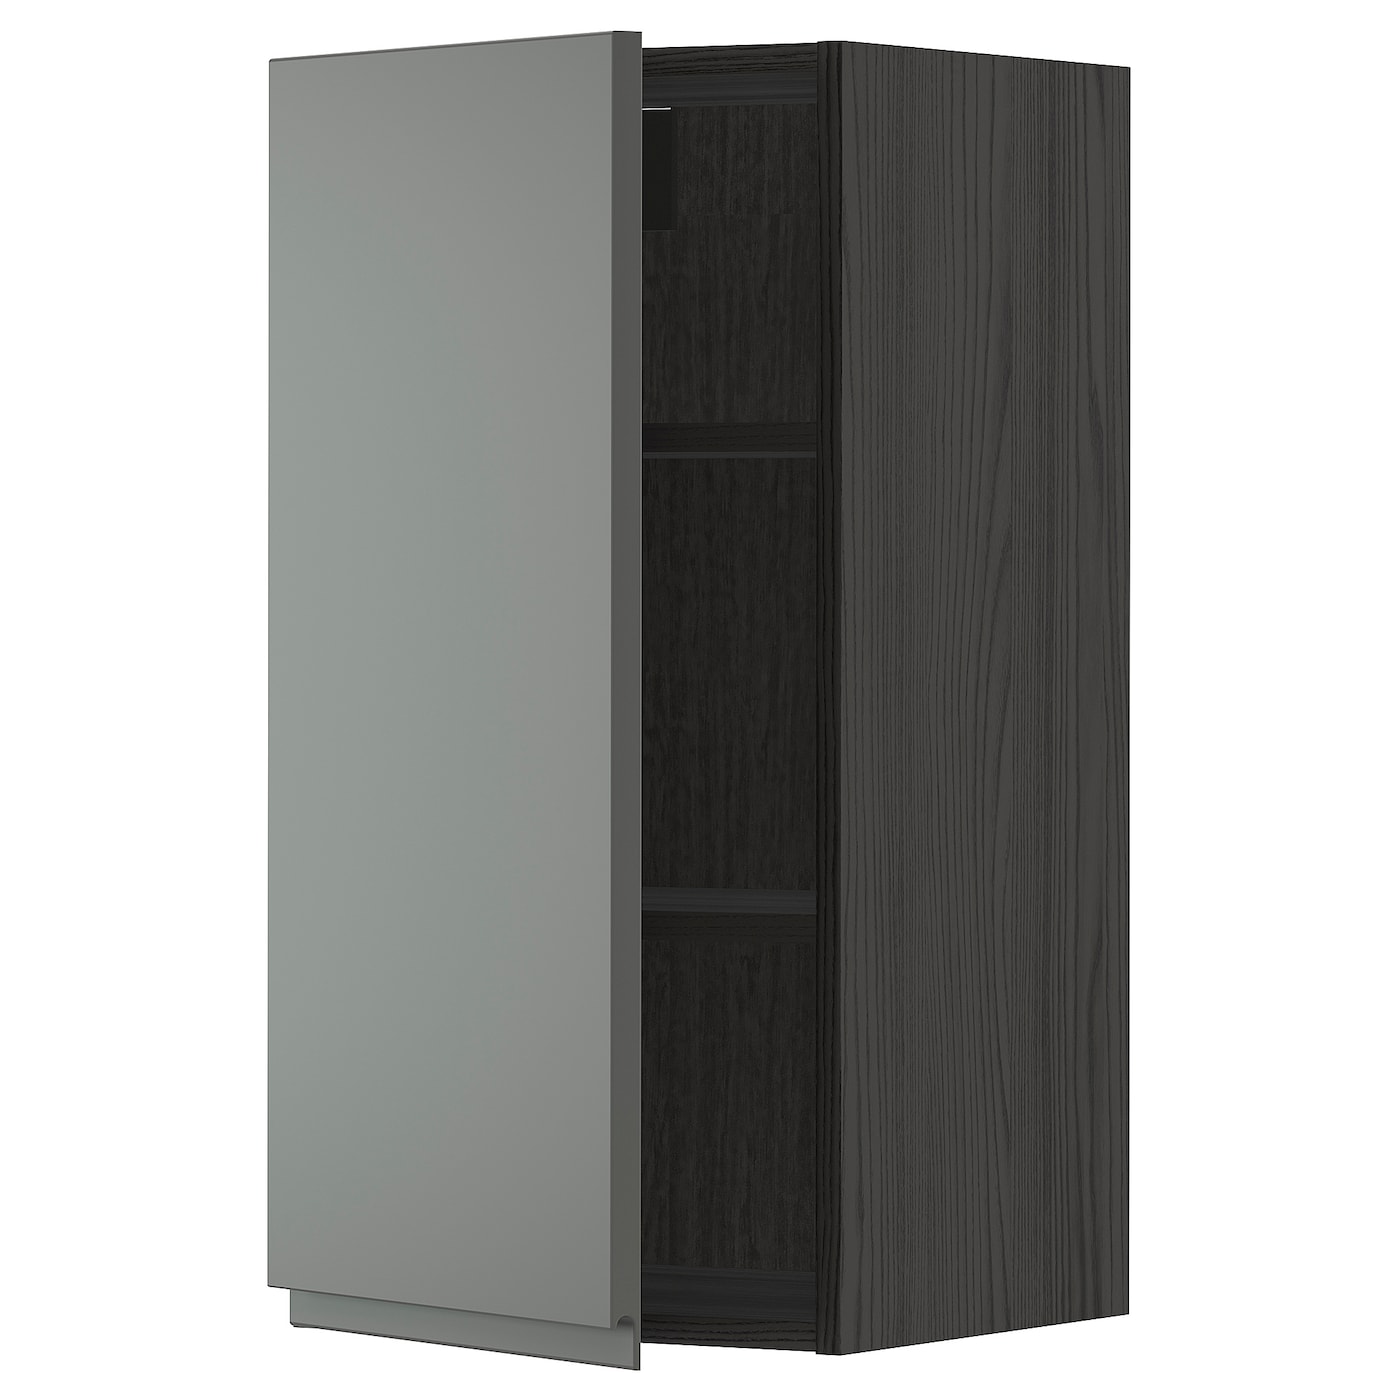 Навесной шкаф с полкой - METOD IKEA/ МЕТОД ИКЕА, 80х40 см, черный/темно-серый